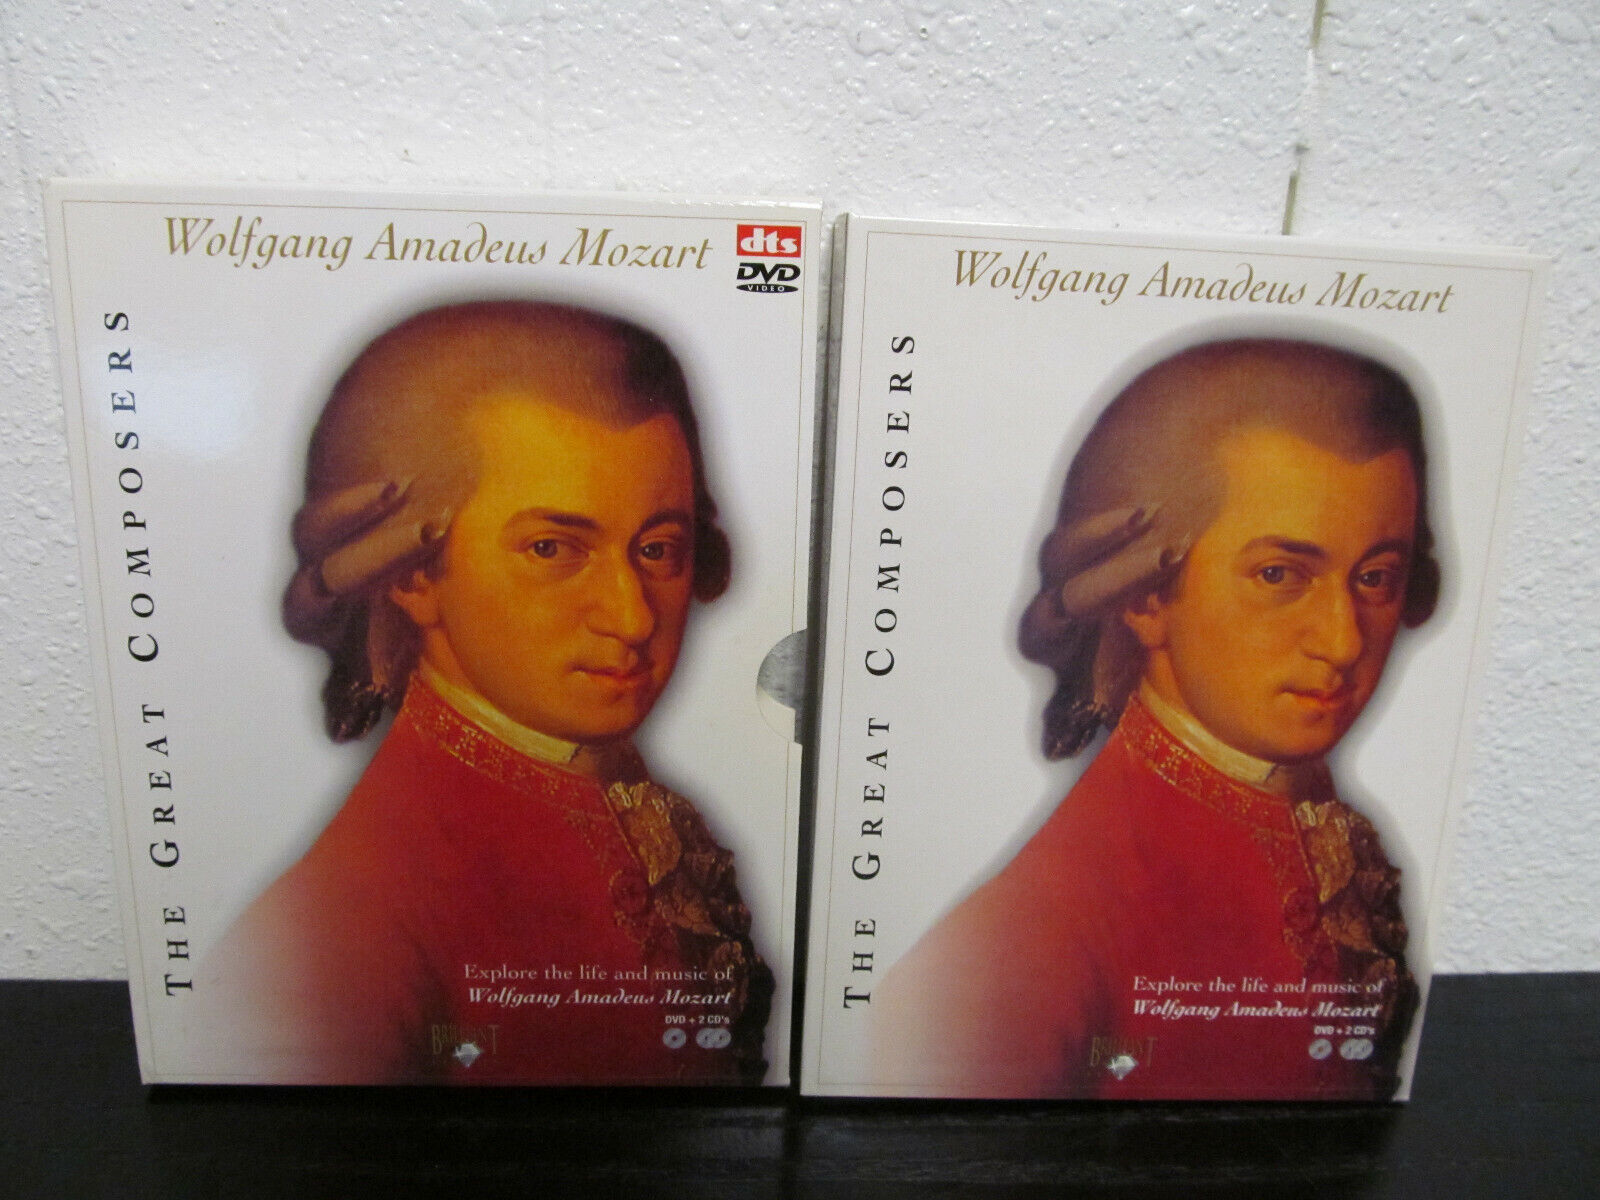 Muerto en el mundo yo eficiencia The Great Composers: Amadeus Mozart ( 1756-1791 ) Piano Music DVD + 2 CD's  842977024111 | eBay